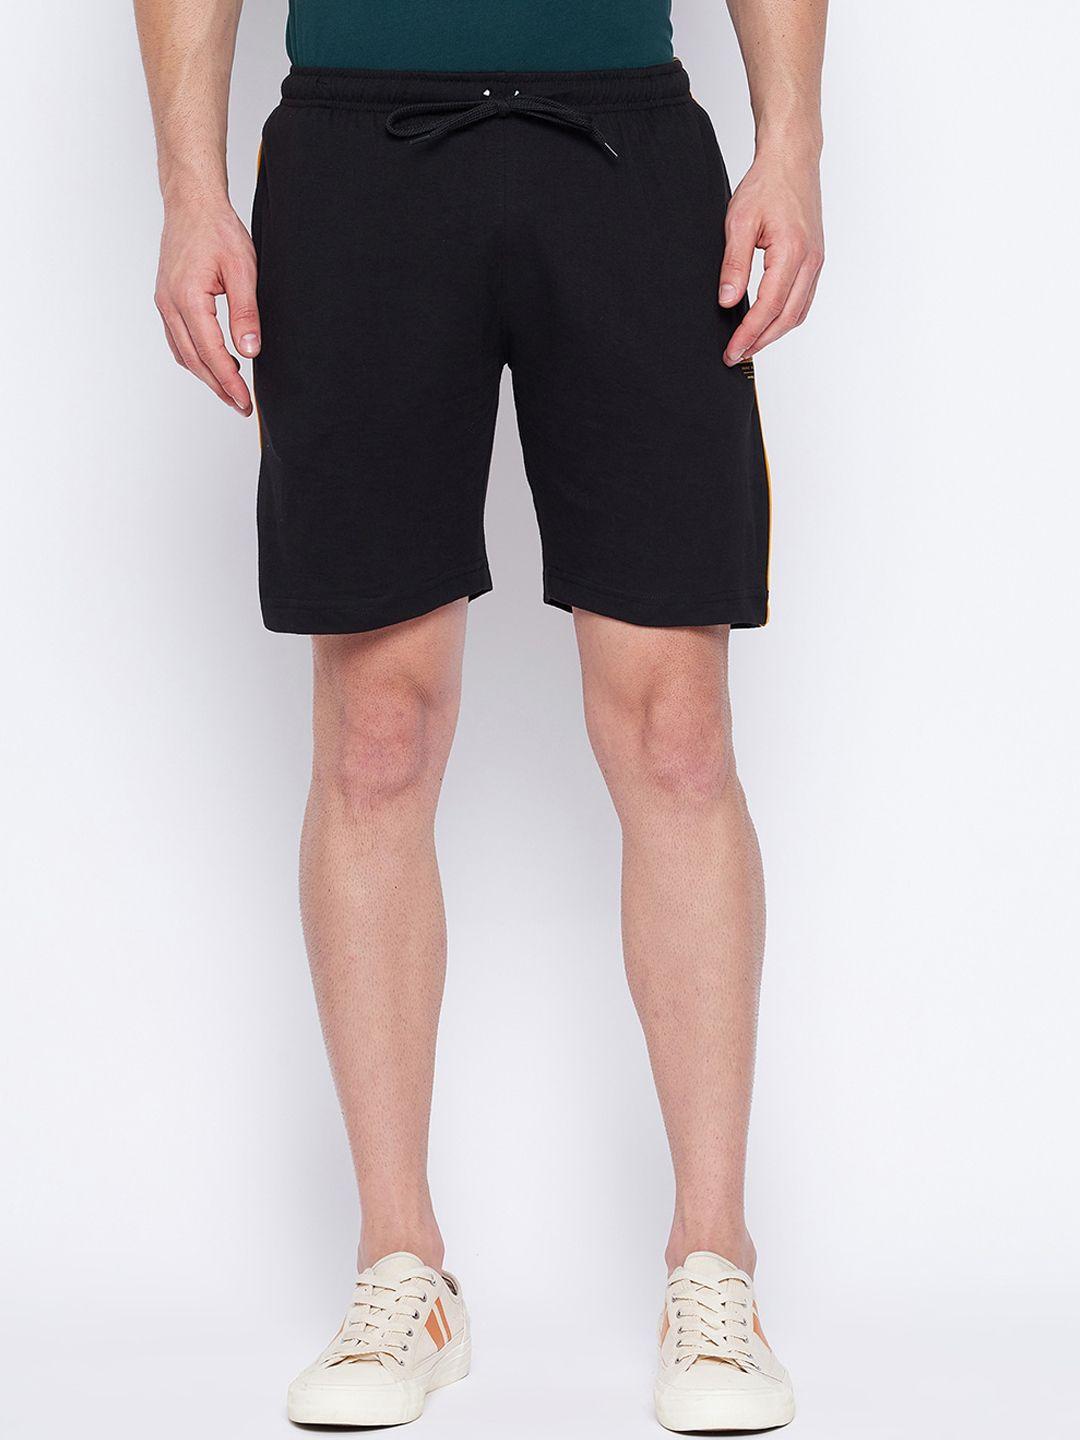 duke-men-black-cotton-sports-shorts